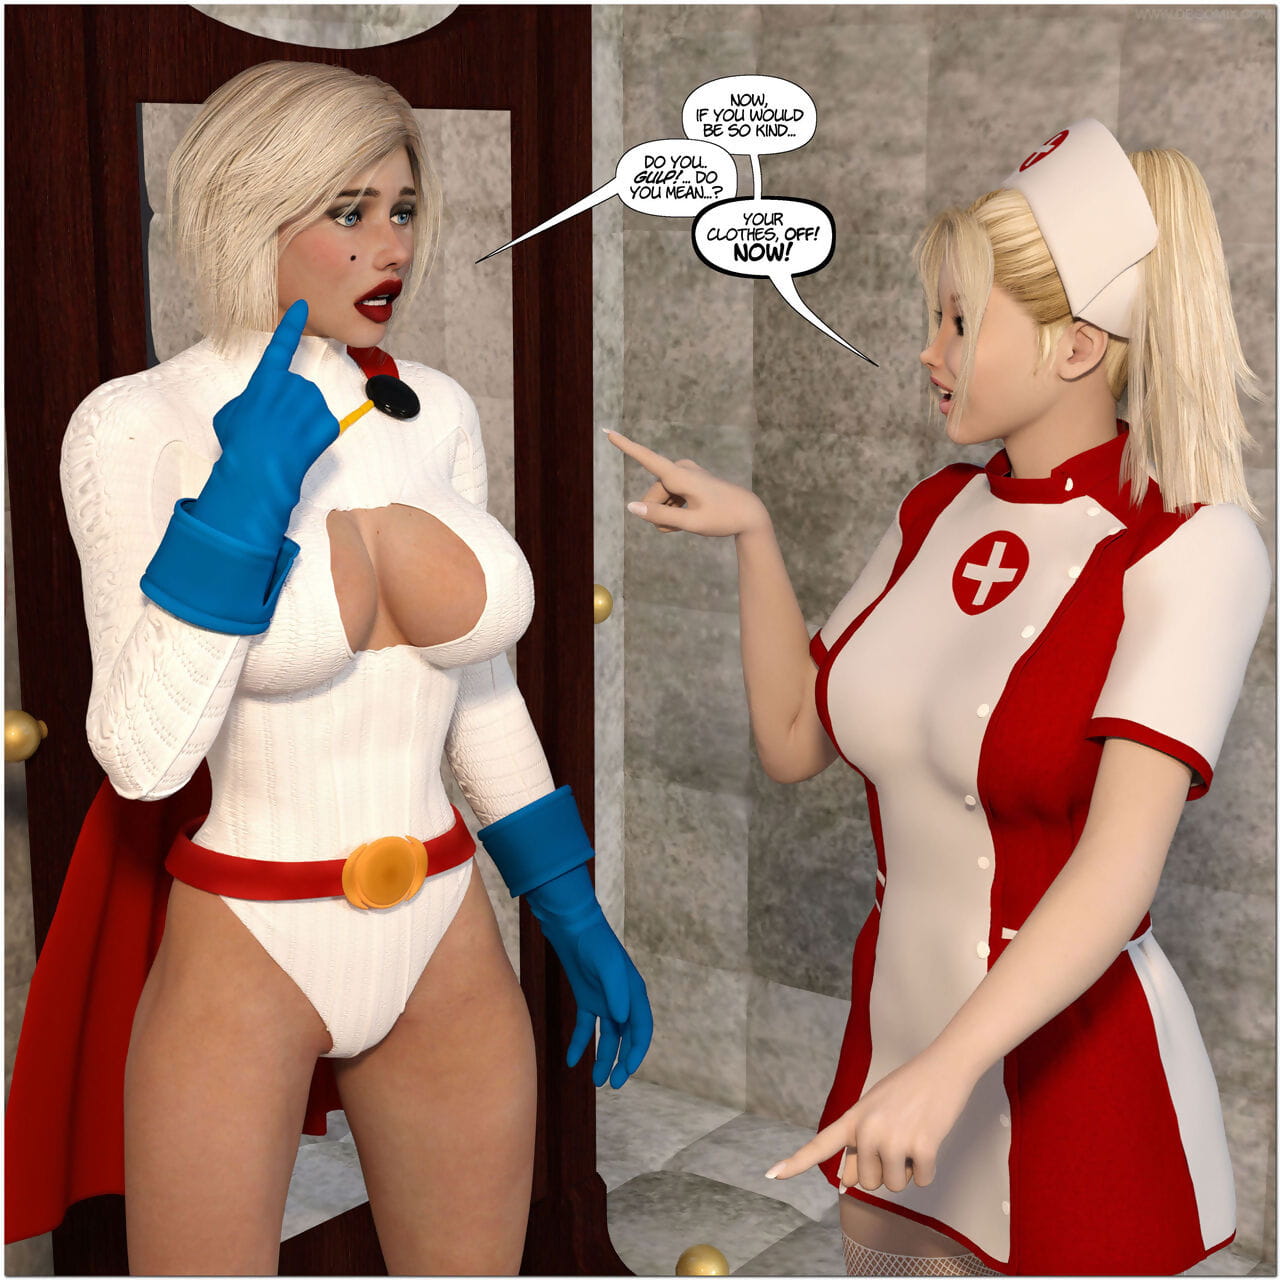 nieuw arkham voor superheroines 1 2nd Editie vernedering en degradatie van Kracht meisje page 1